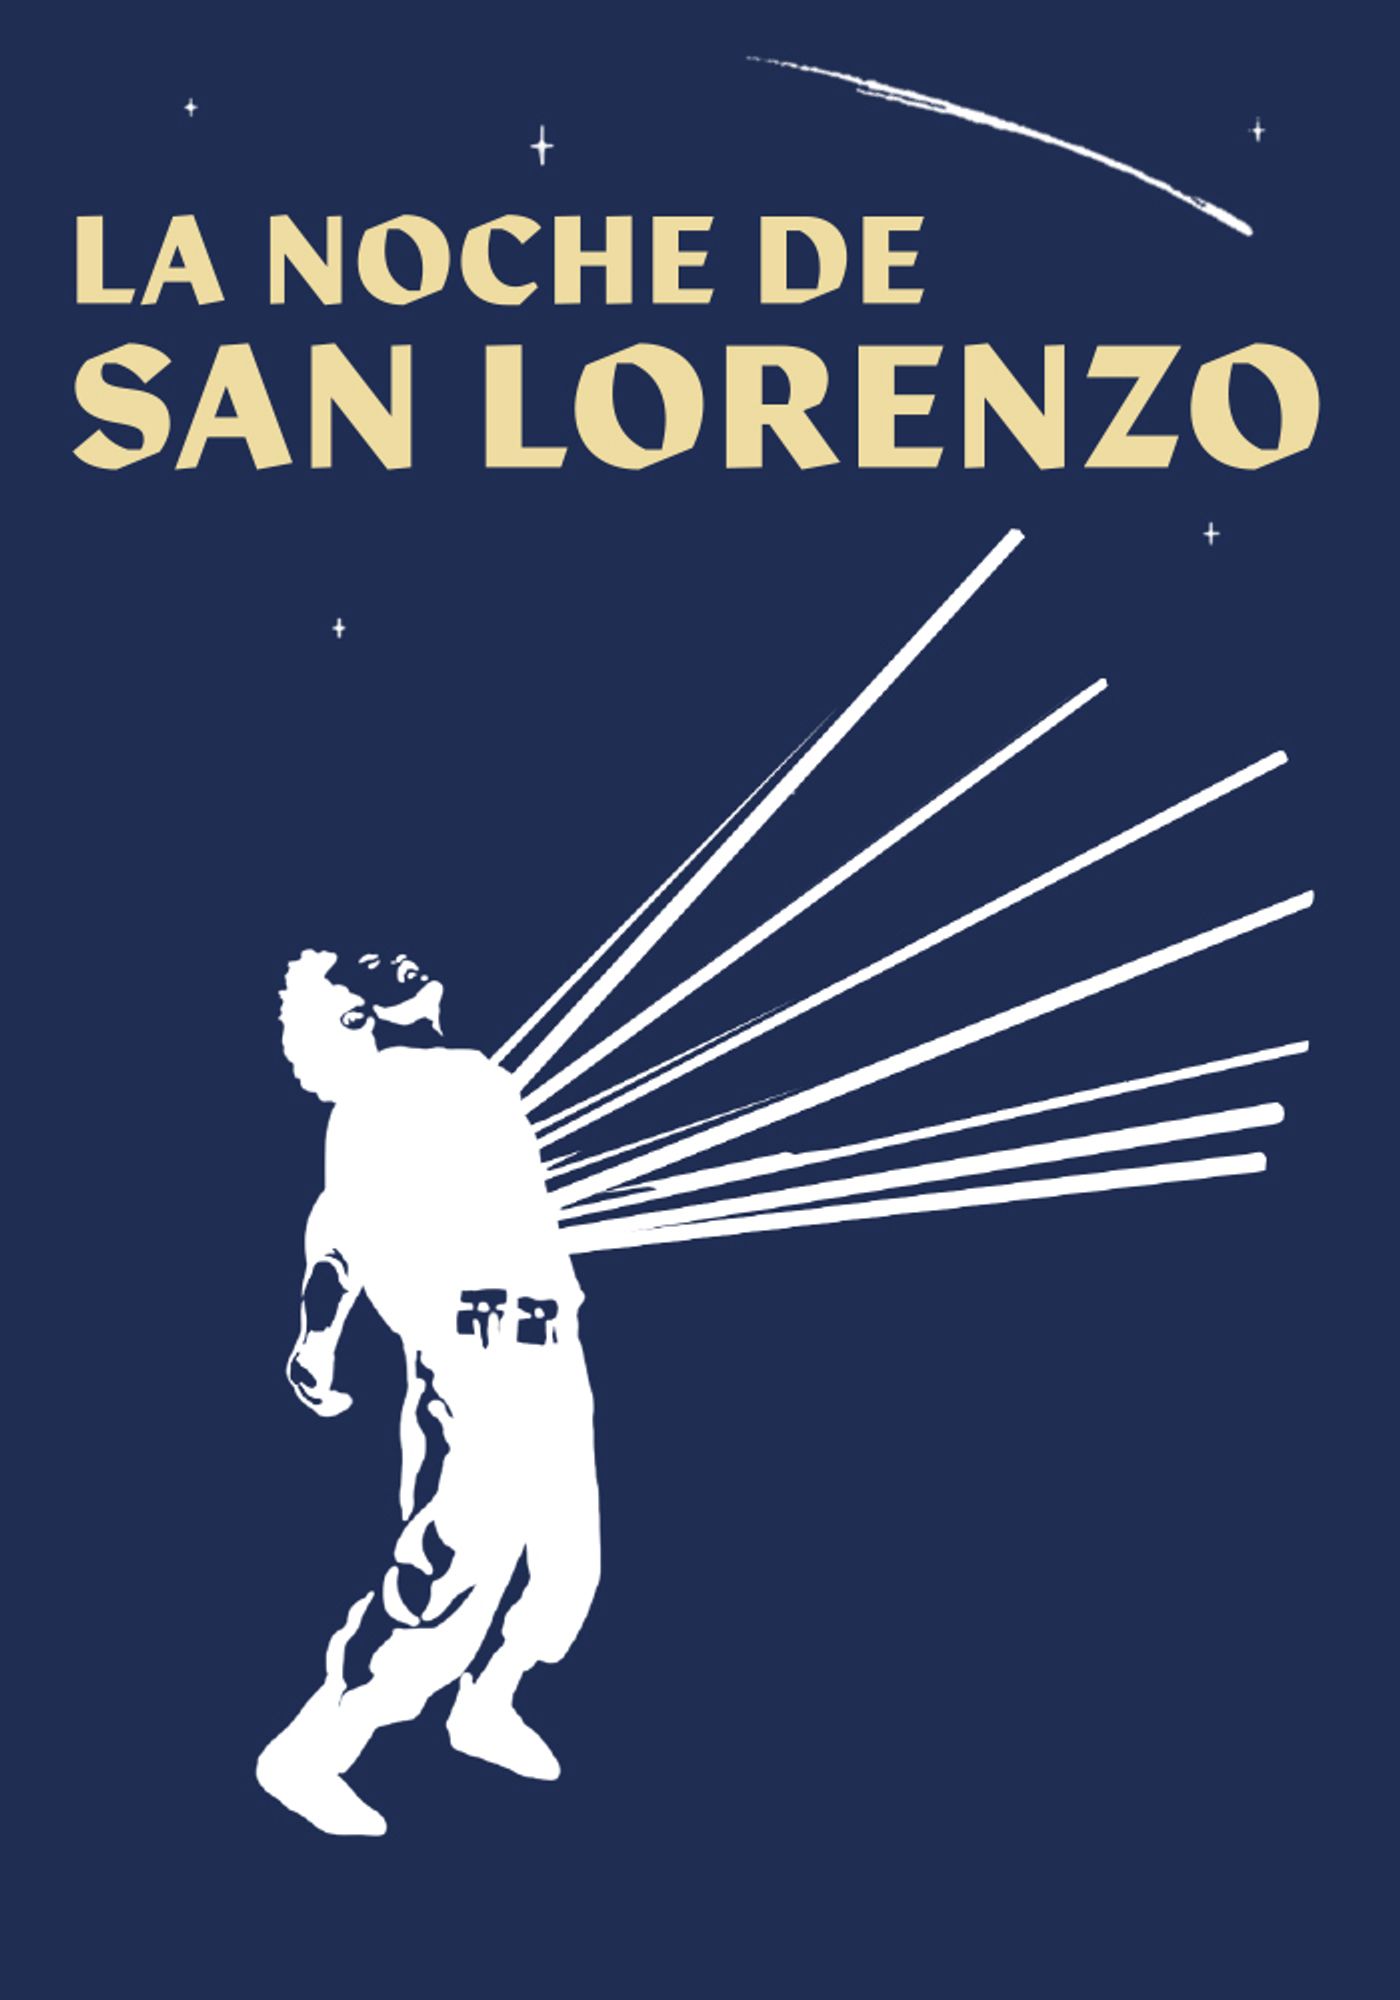 La noche de San Lorenzo